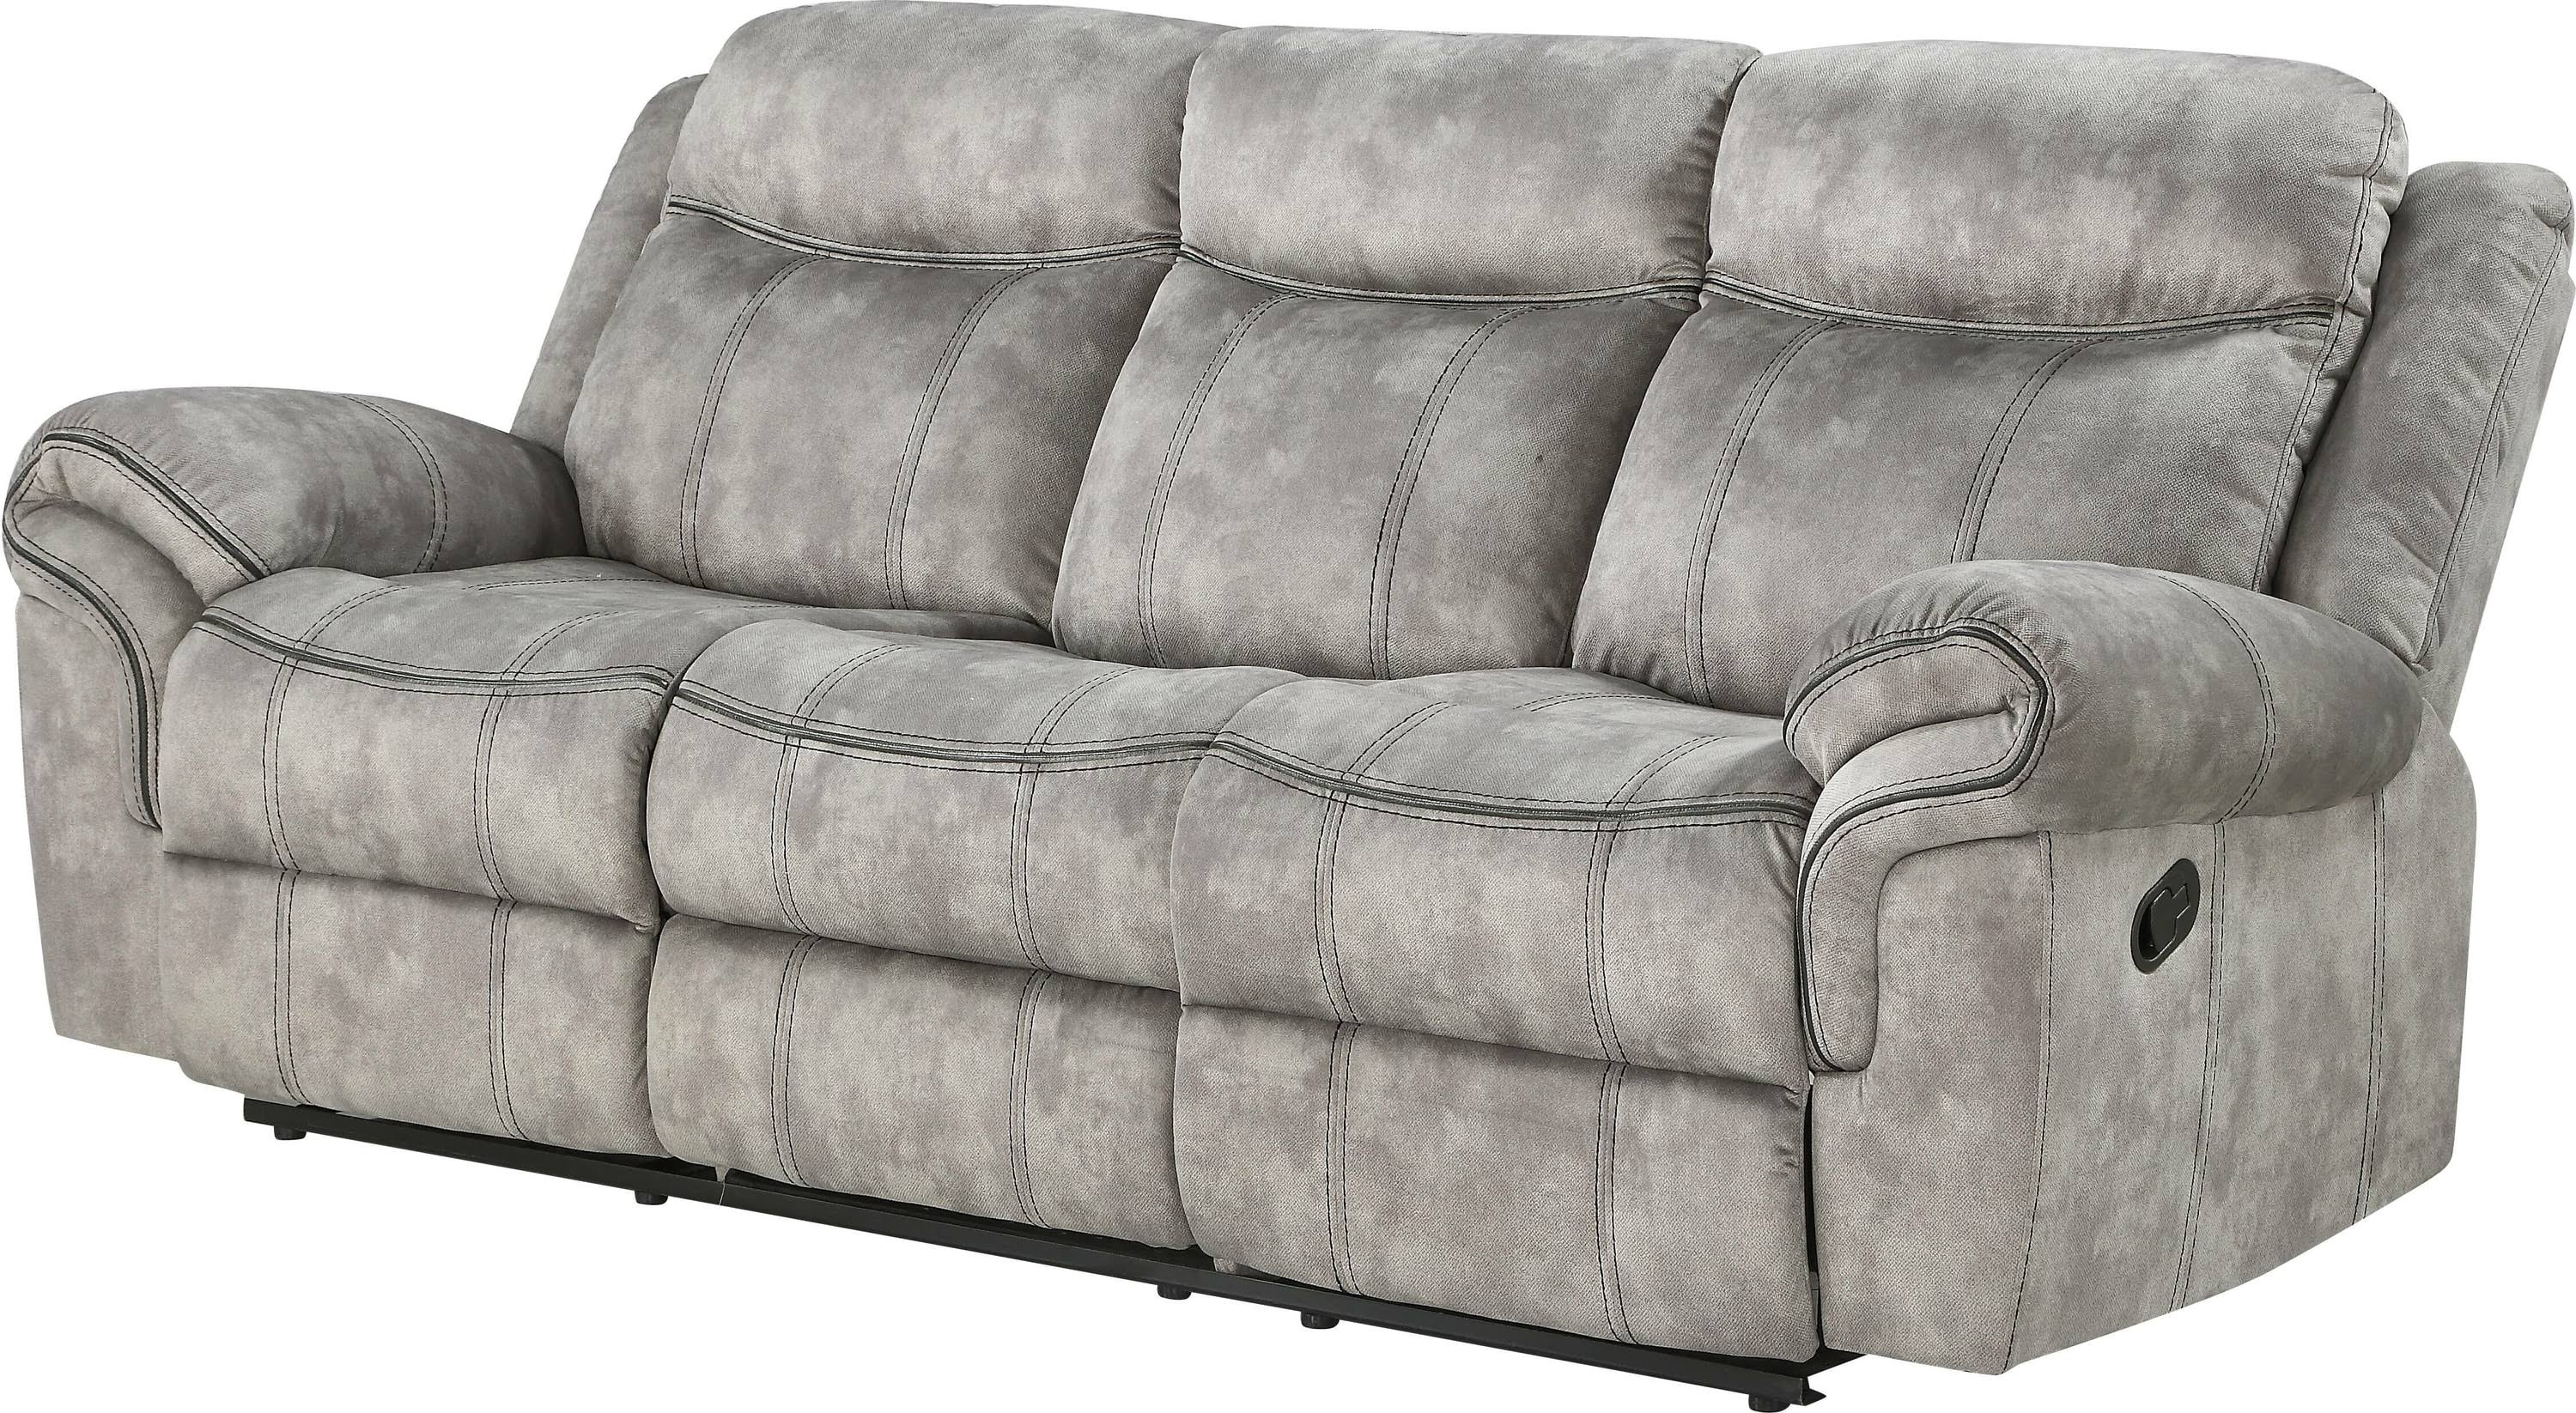 Two Tone Gray Reclining Sofa Angle